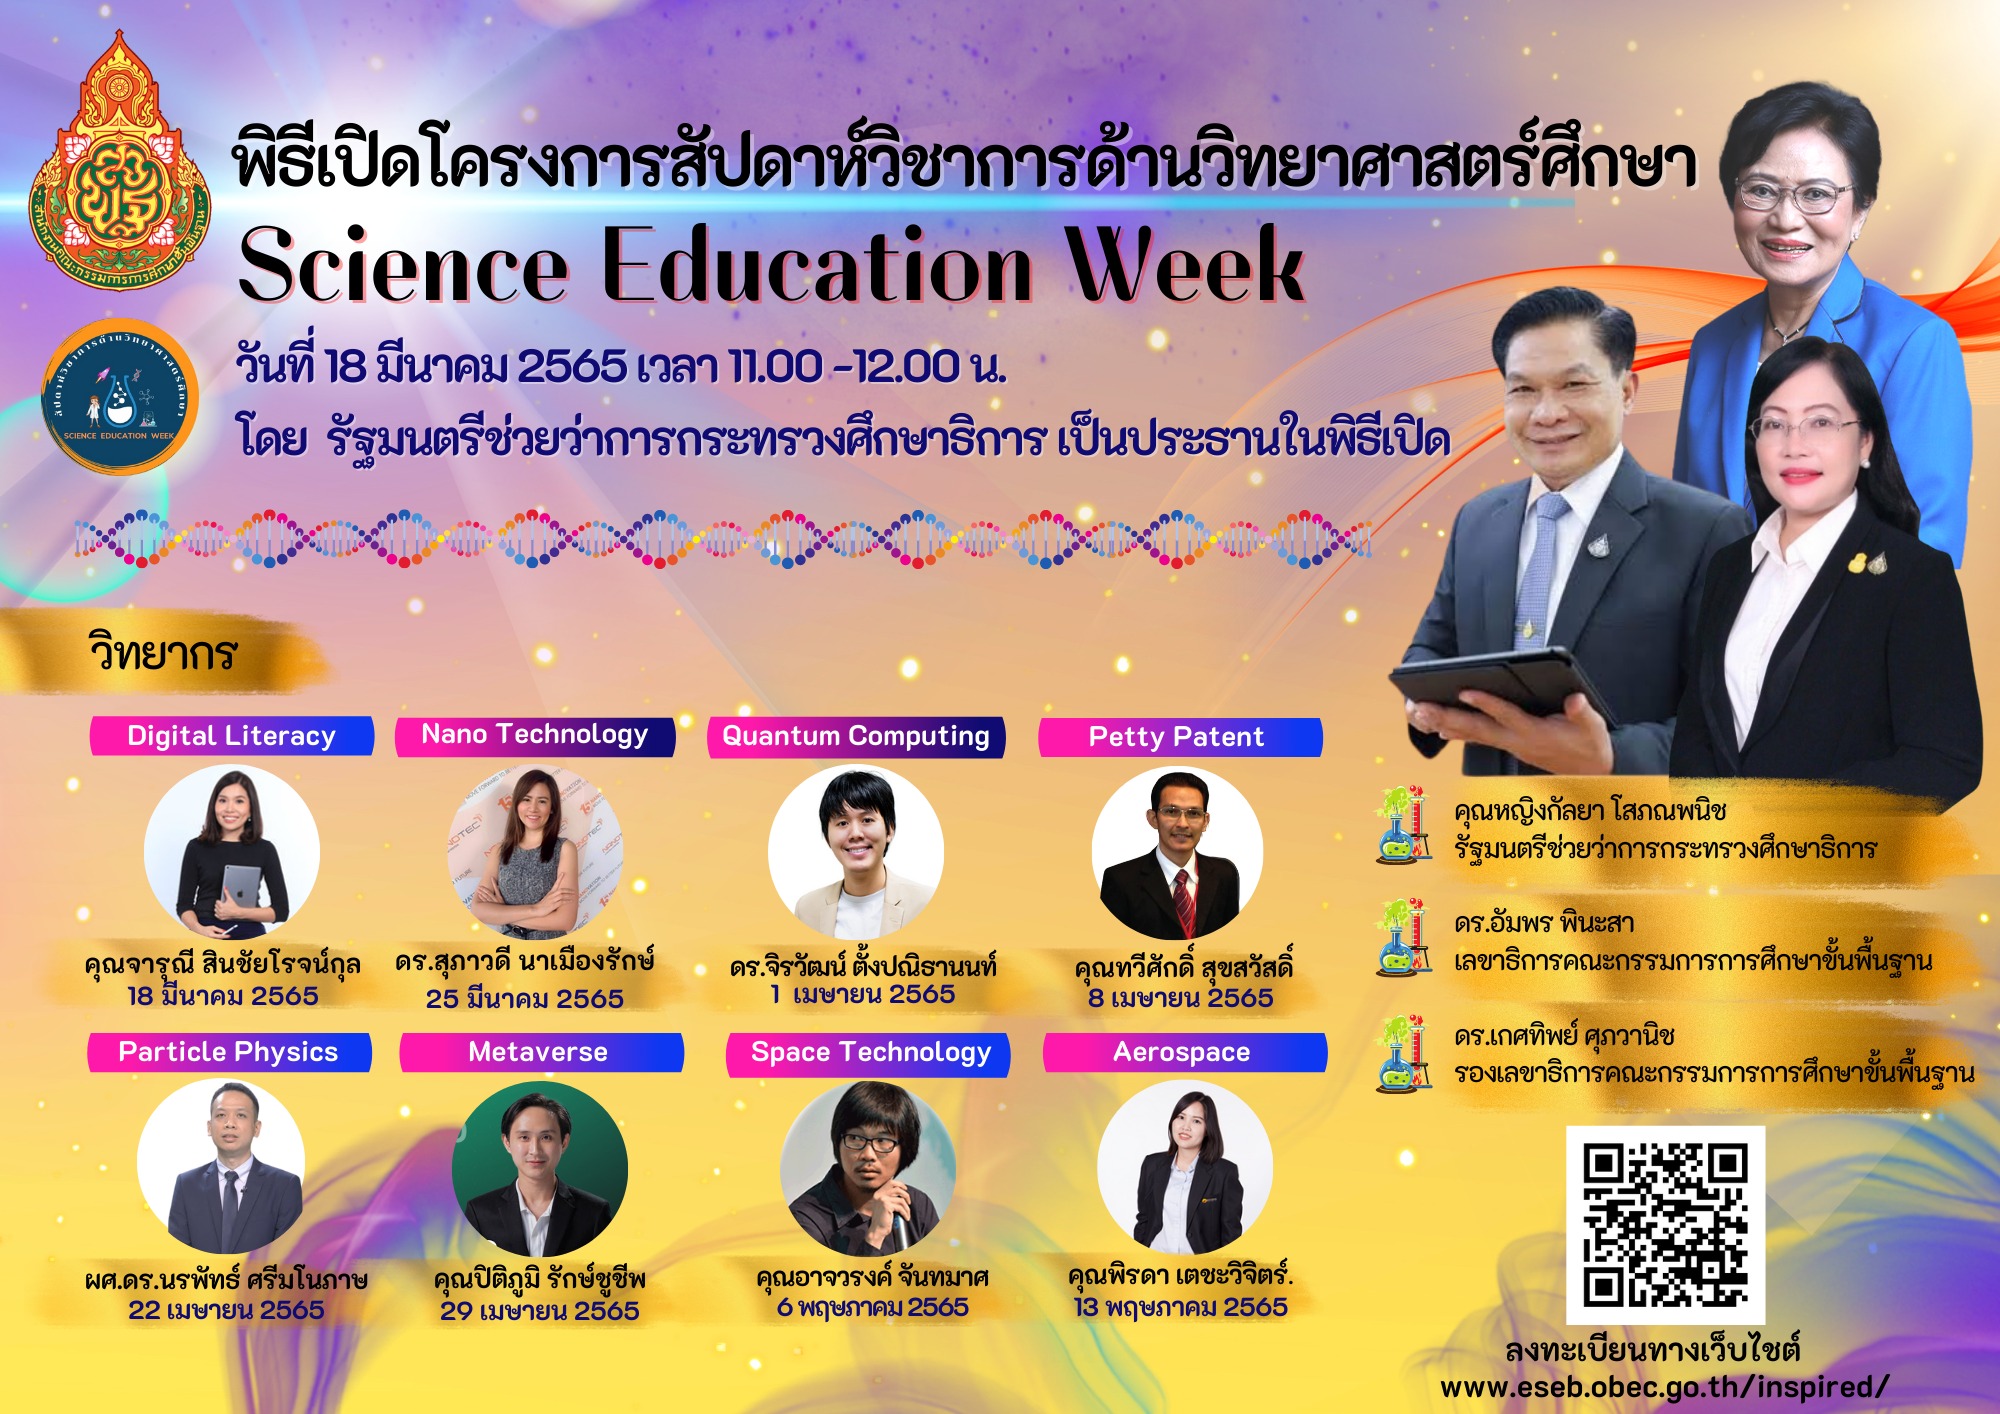 พิธีเปิดโครงการวิชาการวิทยาศาสตร์ศึกษา (Science Education Week)